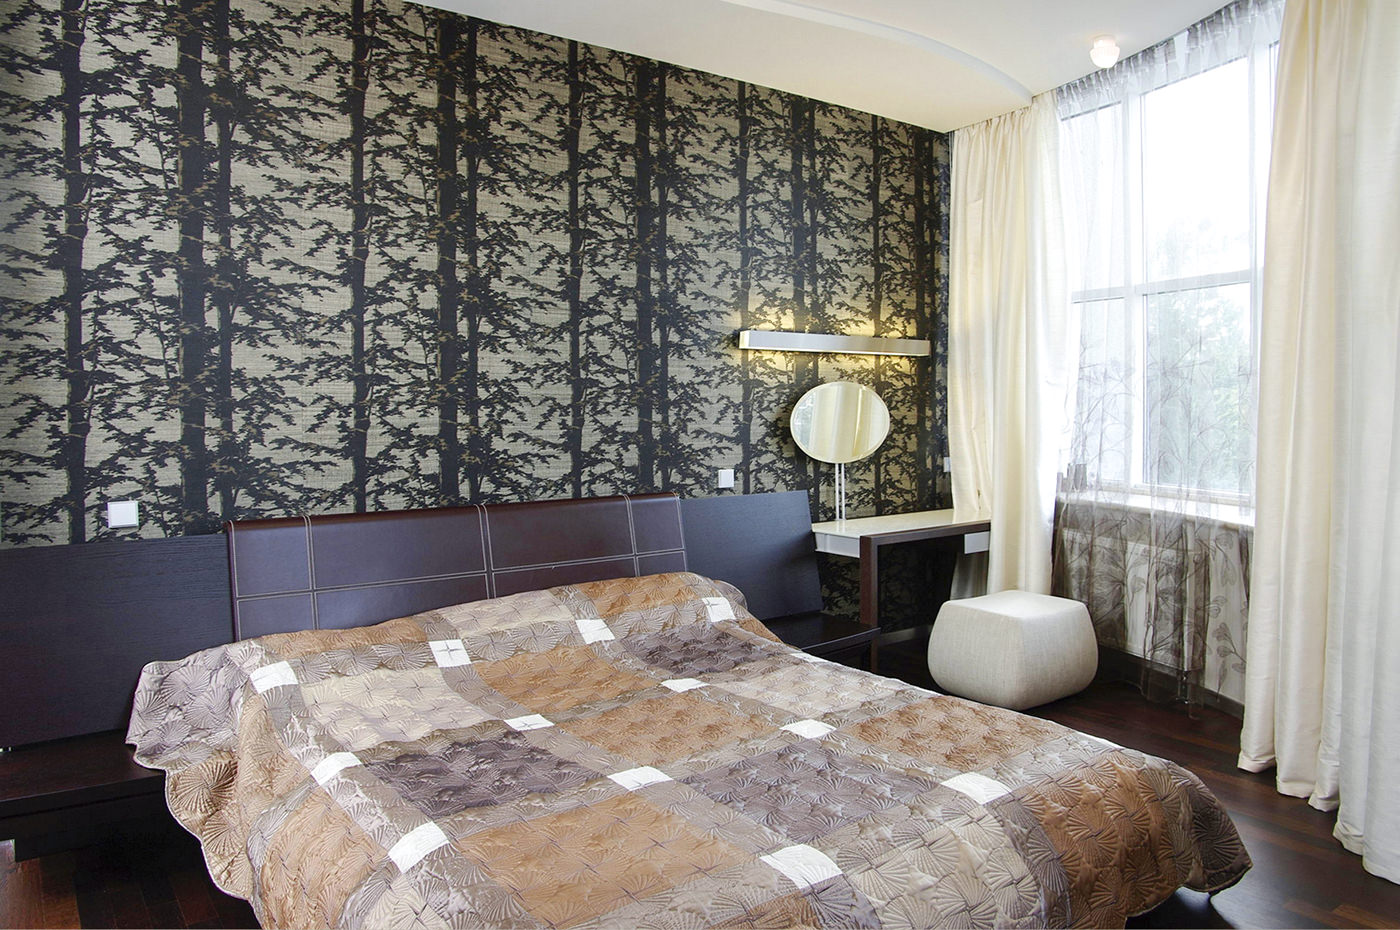 Vorhänge im Schlafzimmerdesign mit grauer Tapete